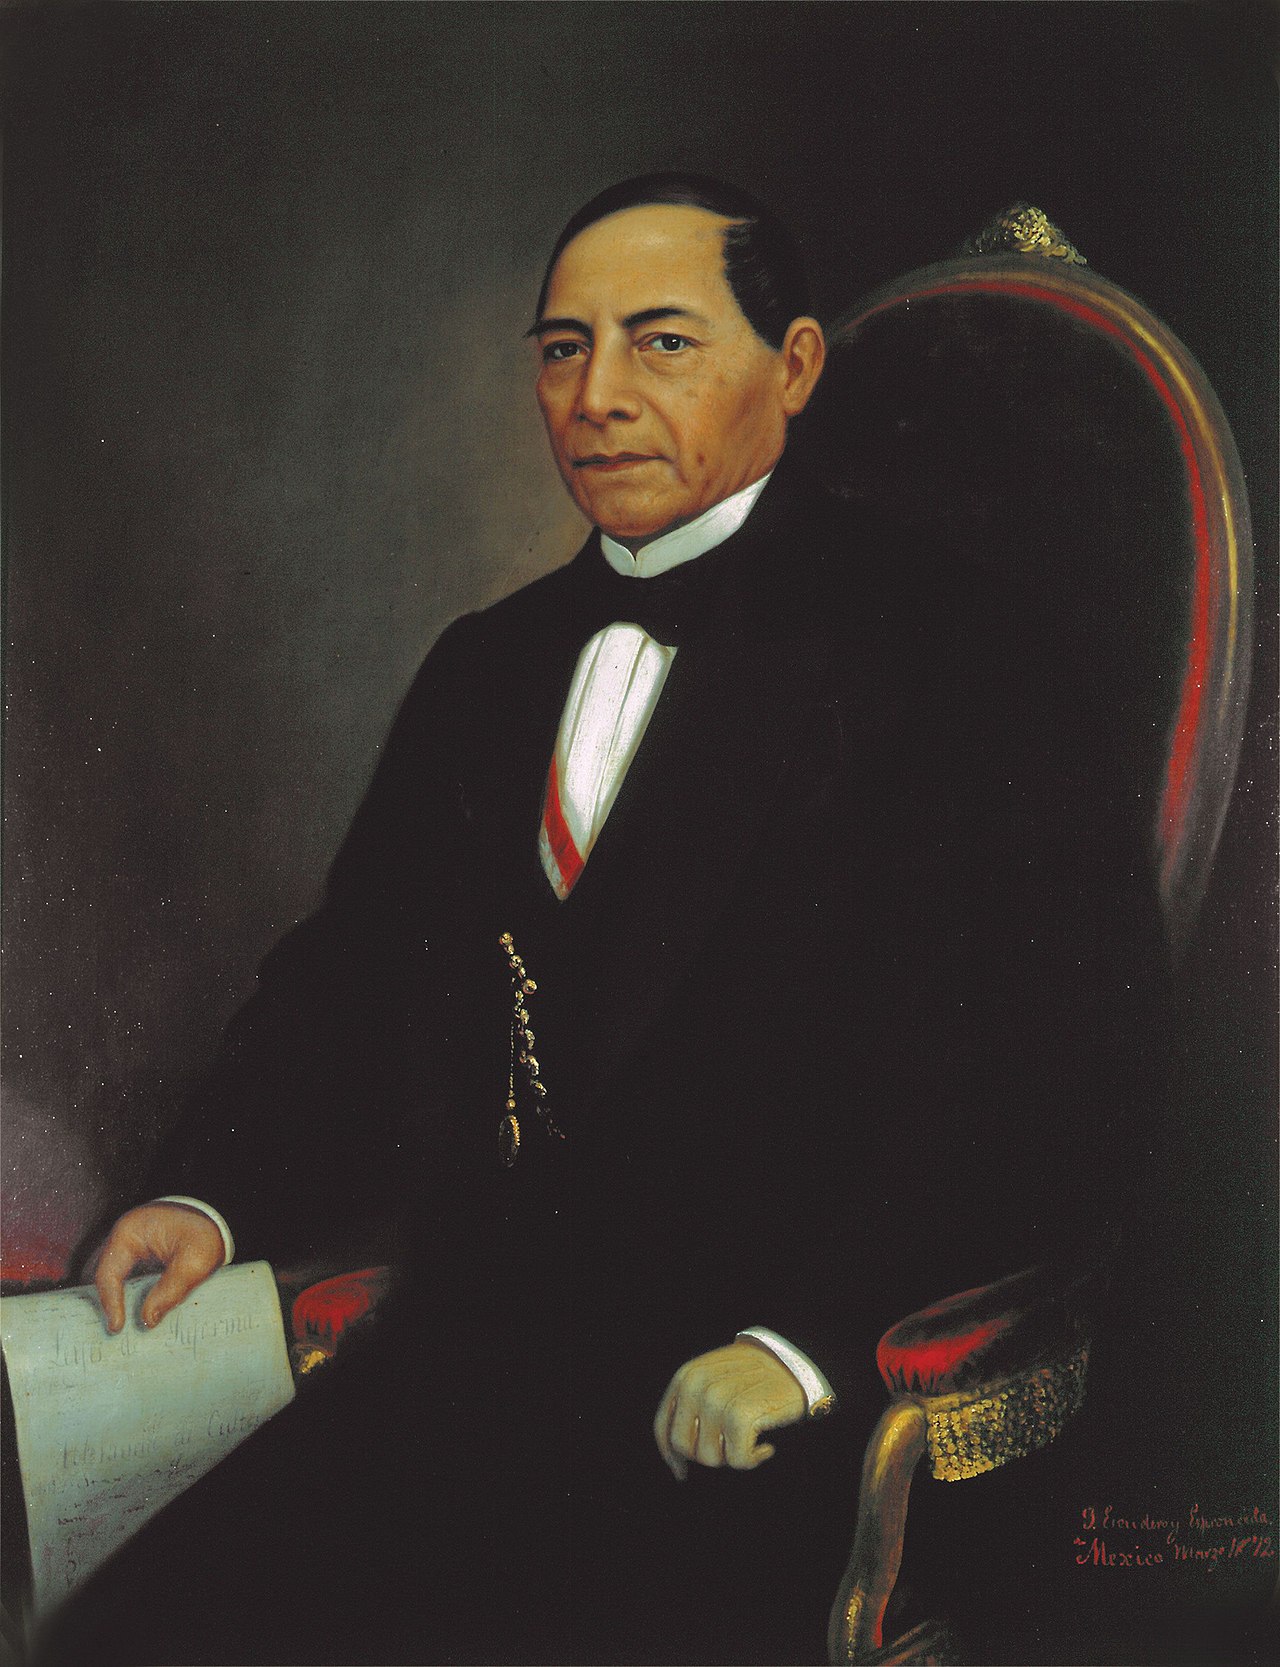 Retrato de Benito Juárez realizado por el artista mexicano José Escudero y Espronceda. Palacio Nacional, México.